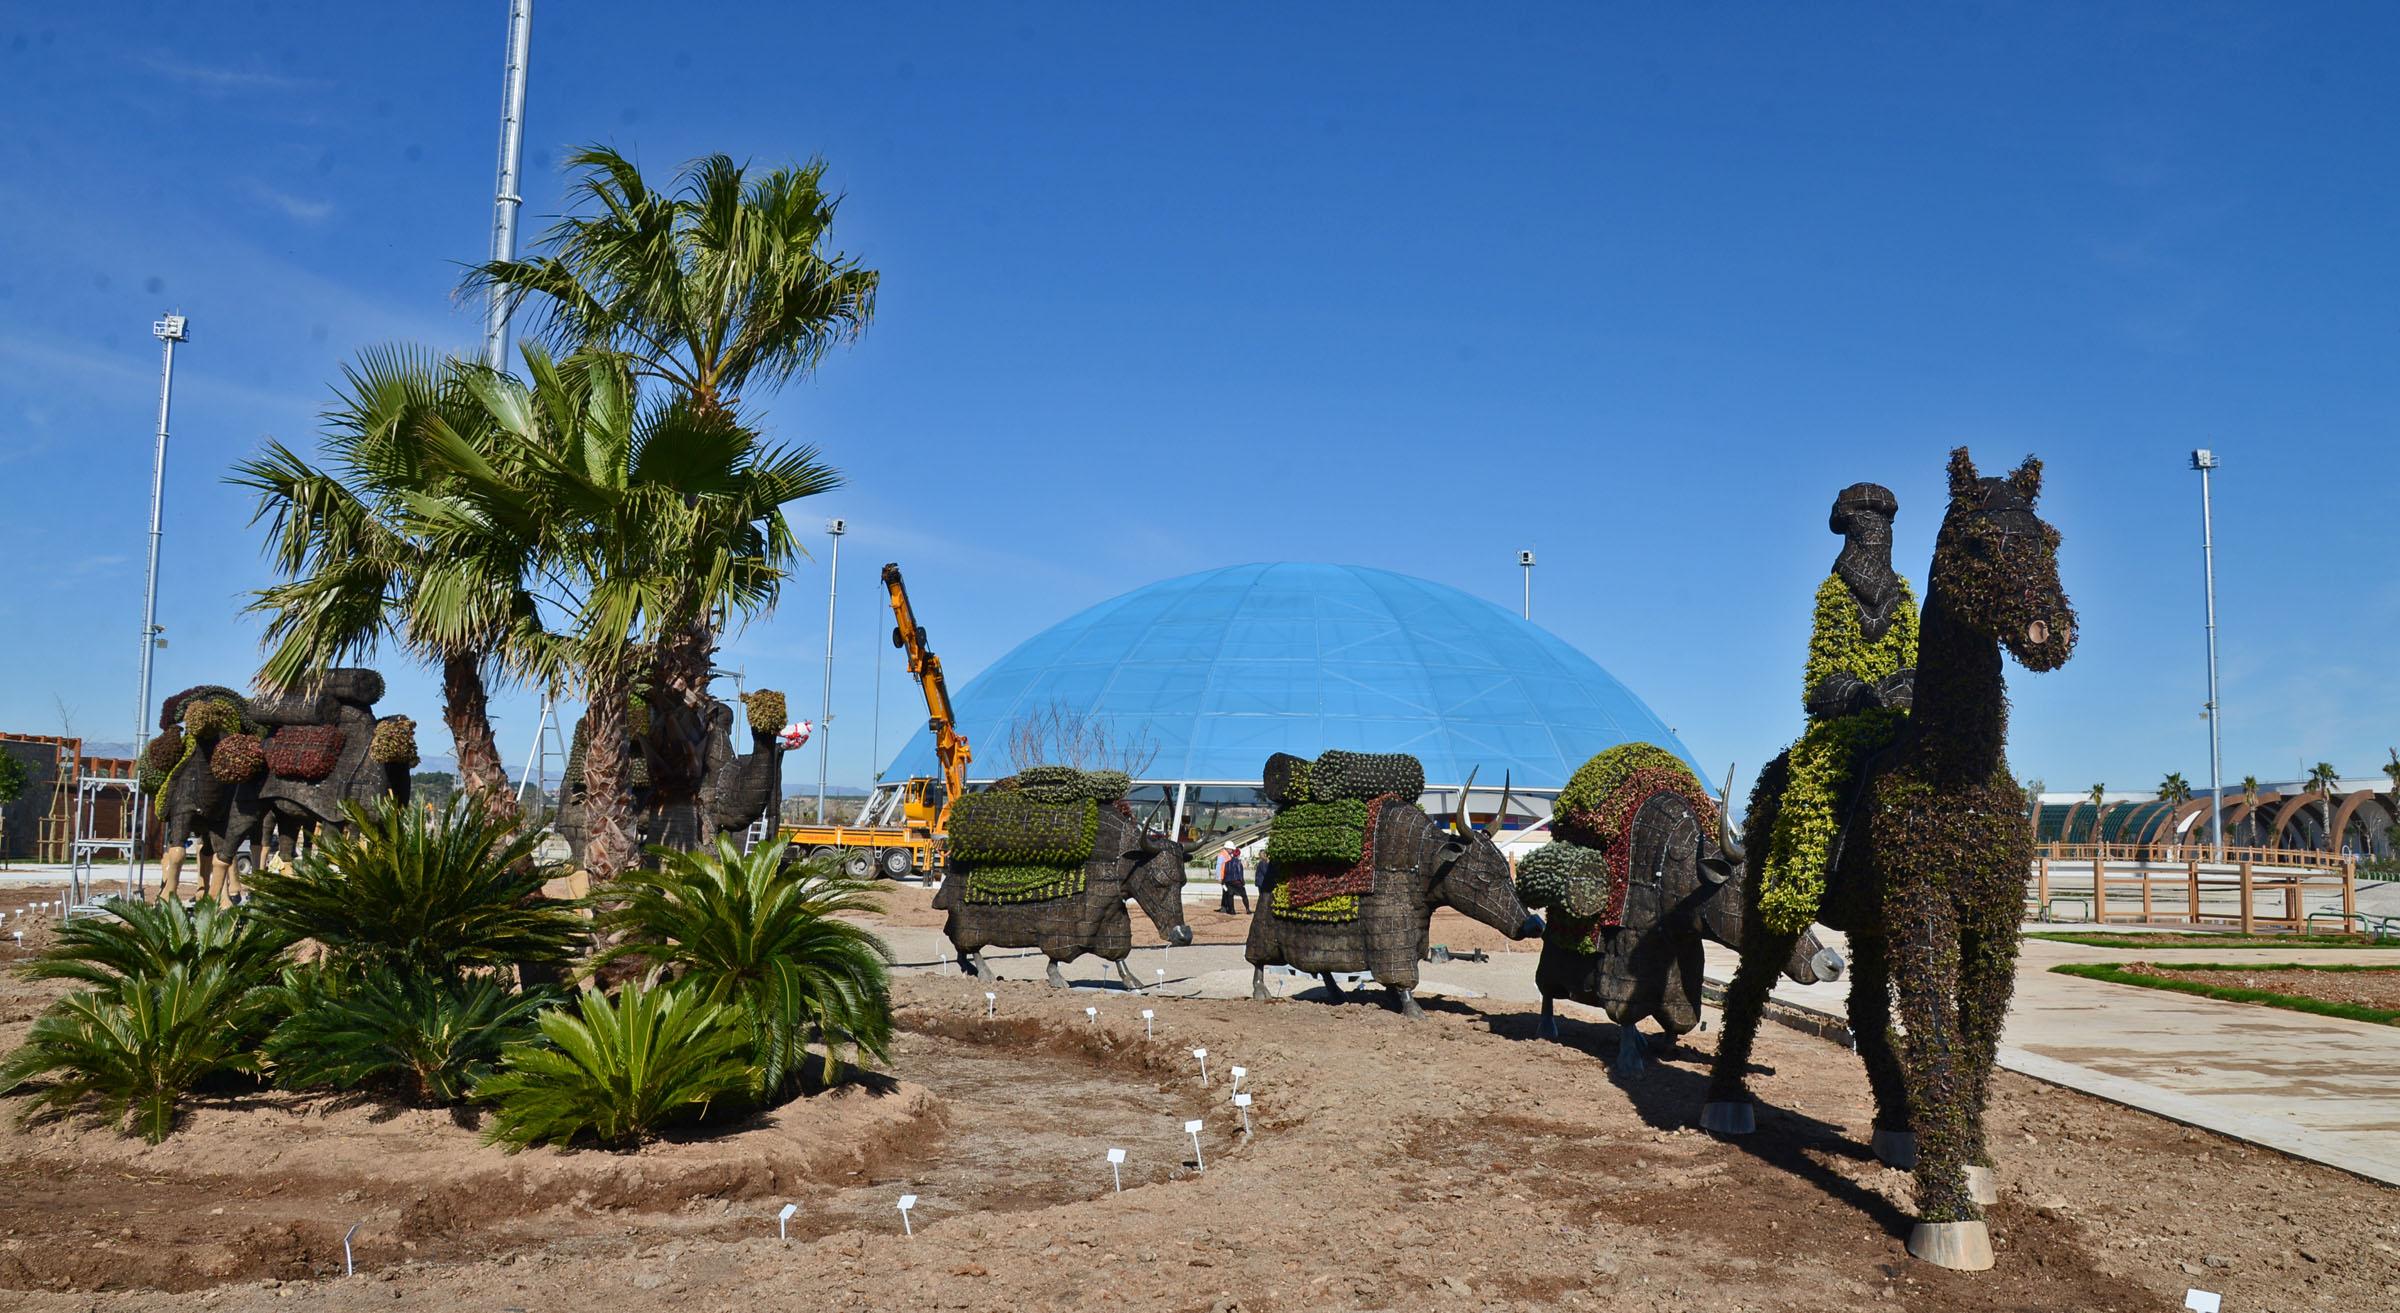 Dünyanın en büyük canlı bitki heykel sergisi EXPO 2016’da